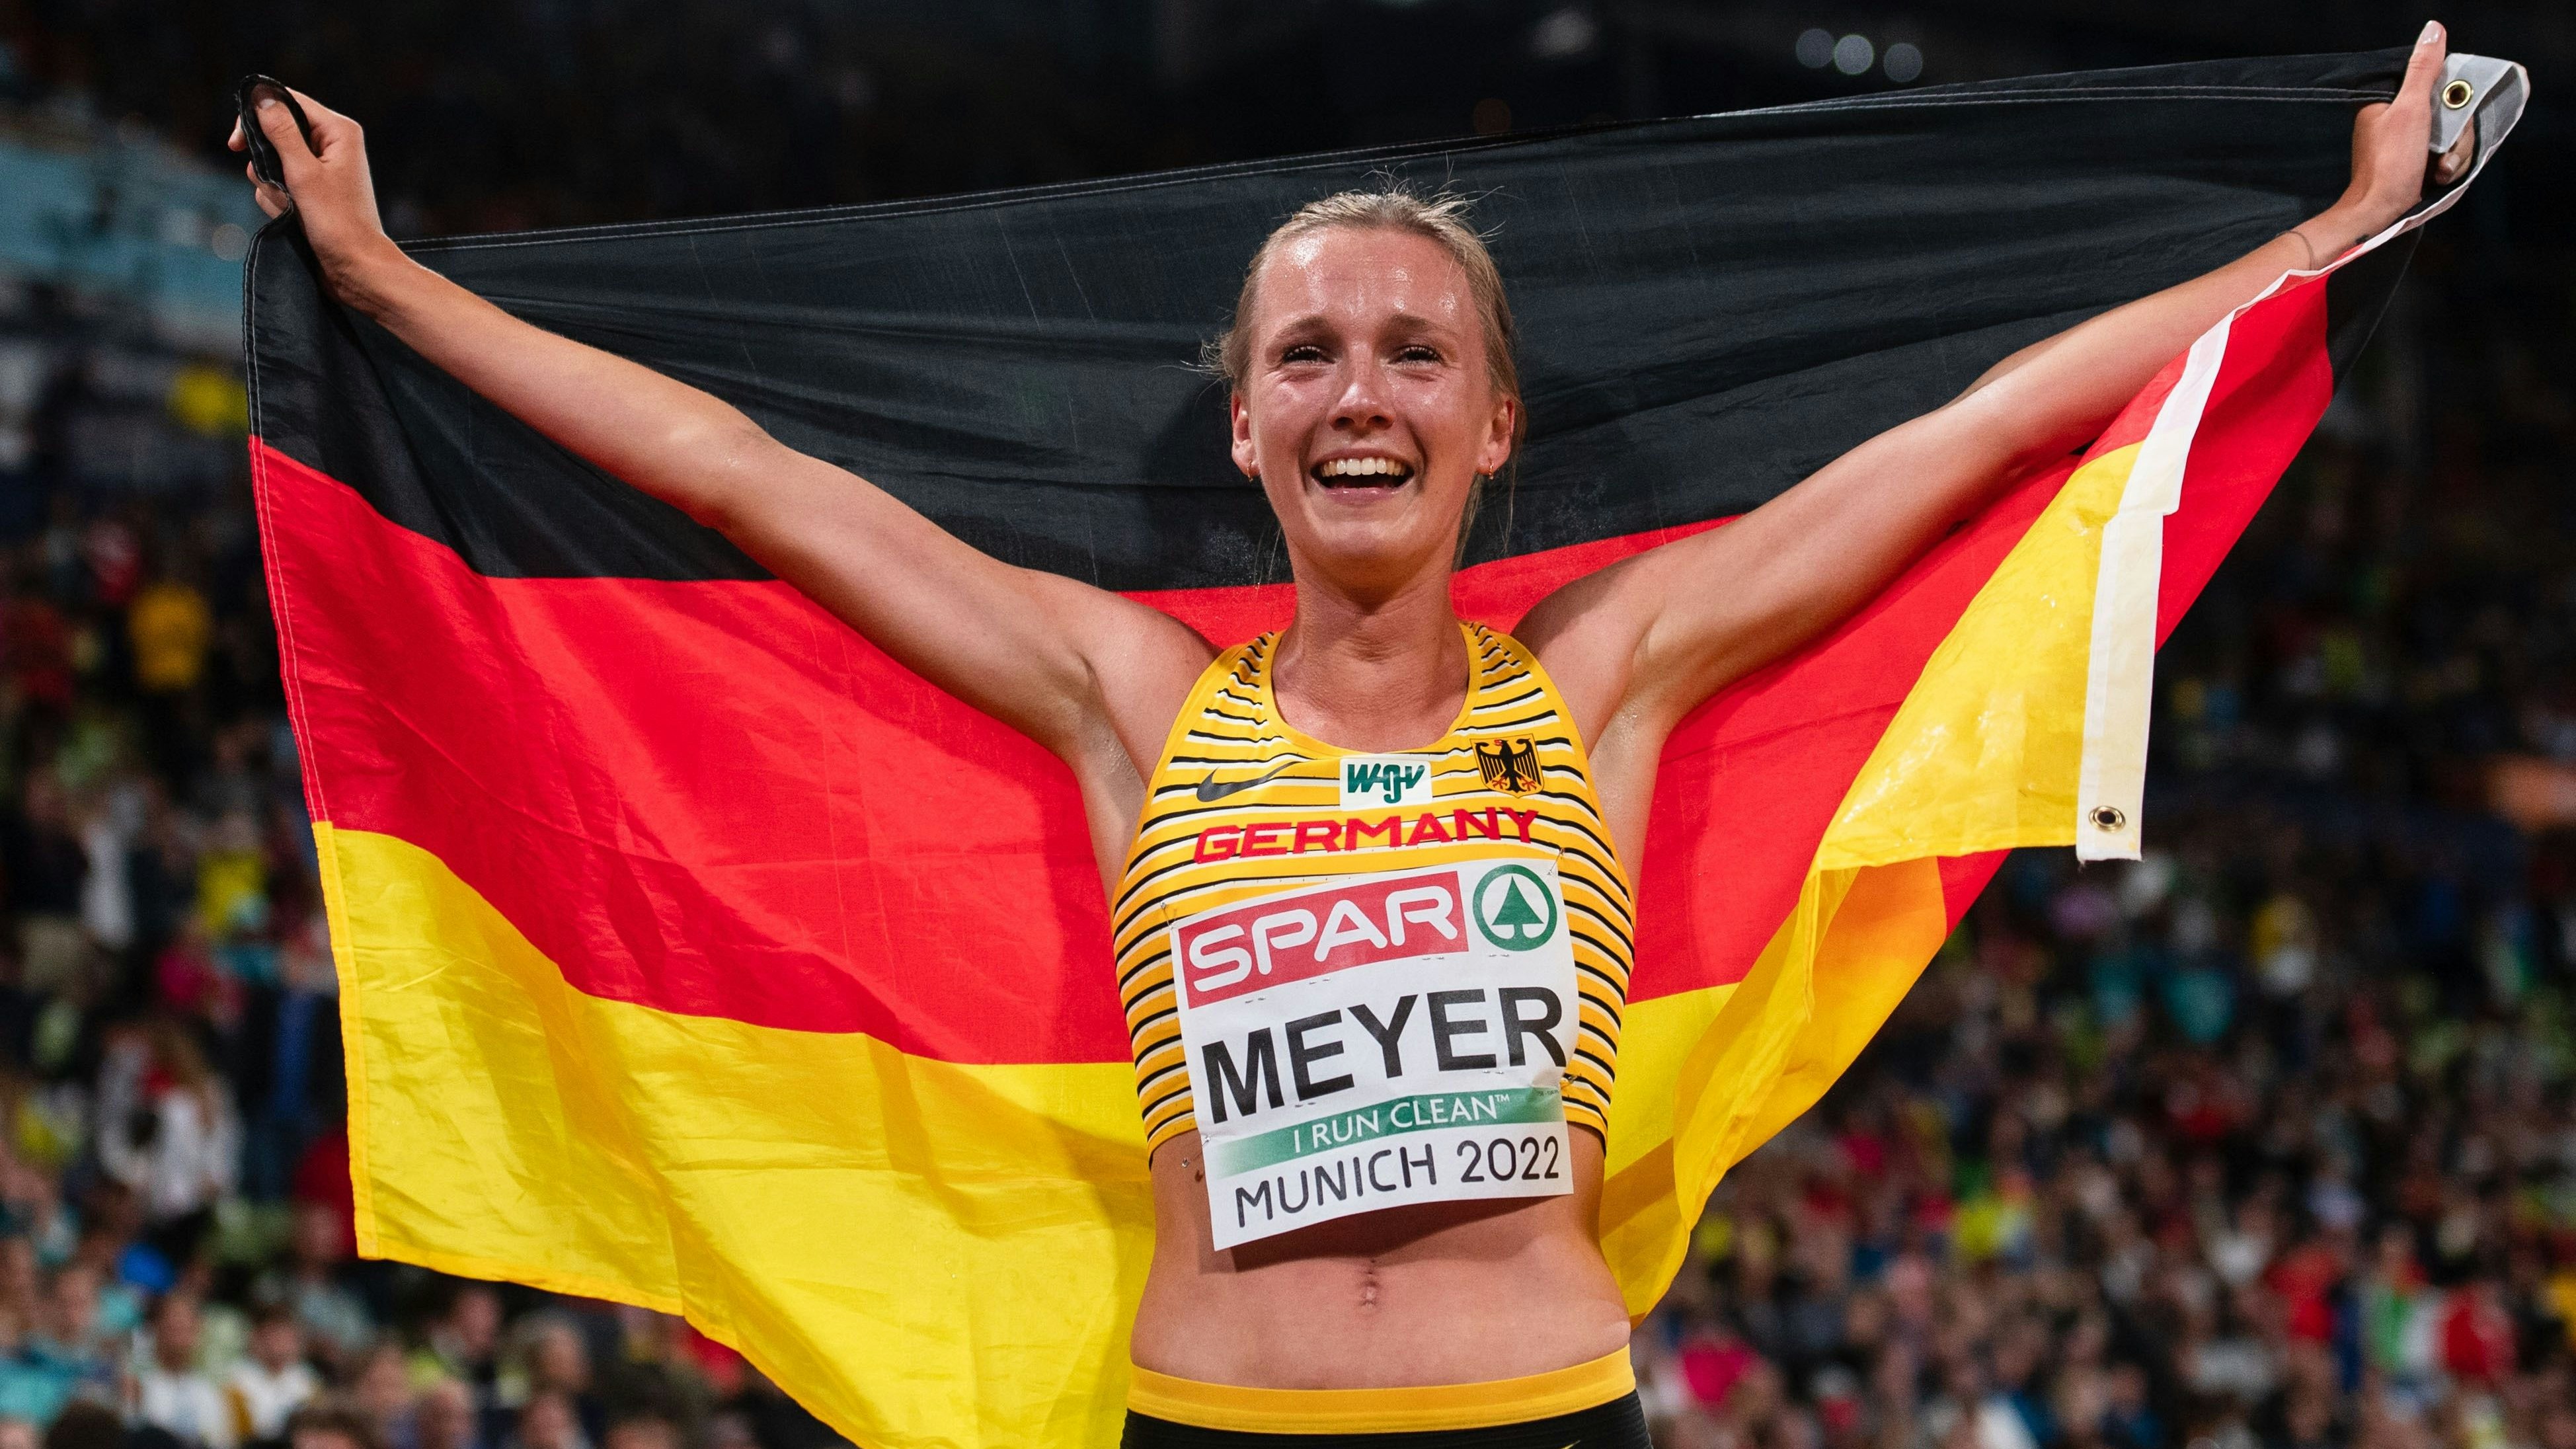 Der größte Moment: Lea Meyer feiert bei der Leichtathletik-EM in München Silber über 3000 m Hindernis. Foto: dpa/picture allivance